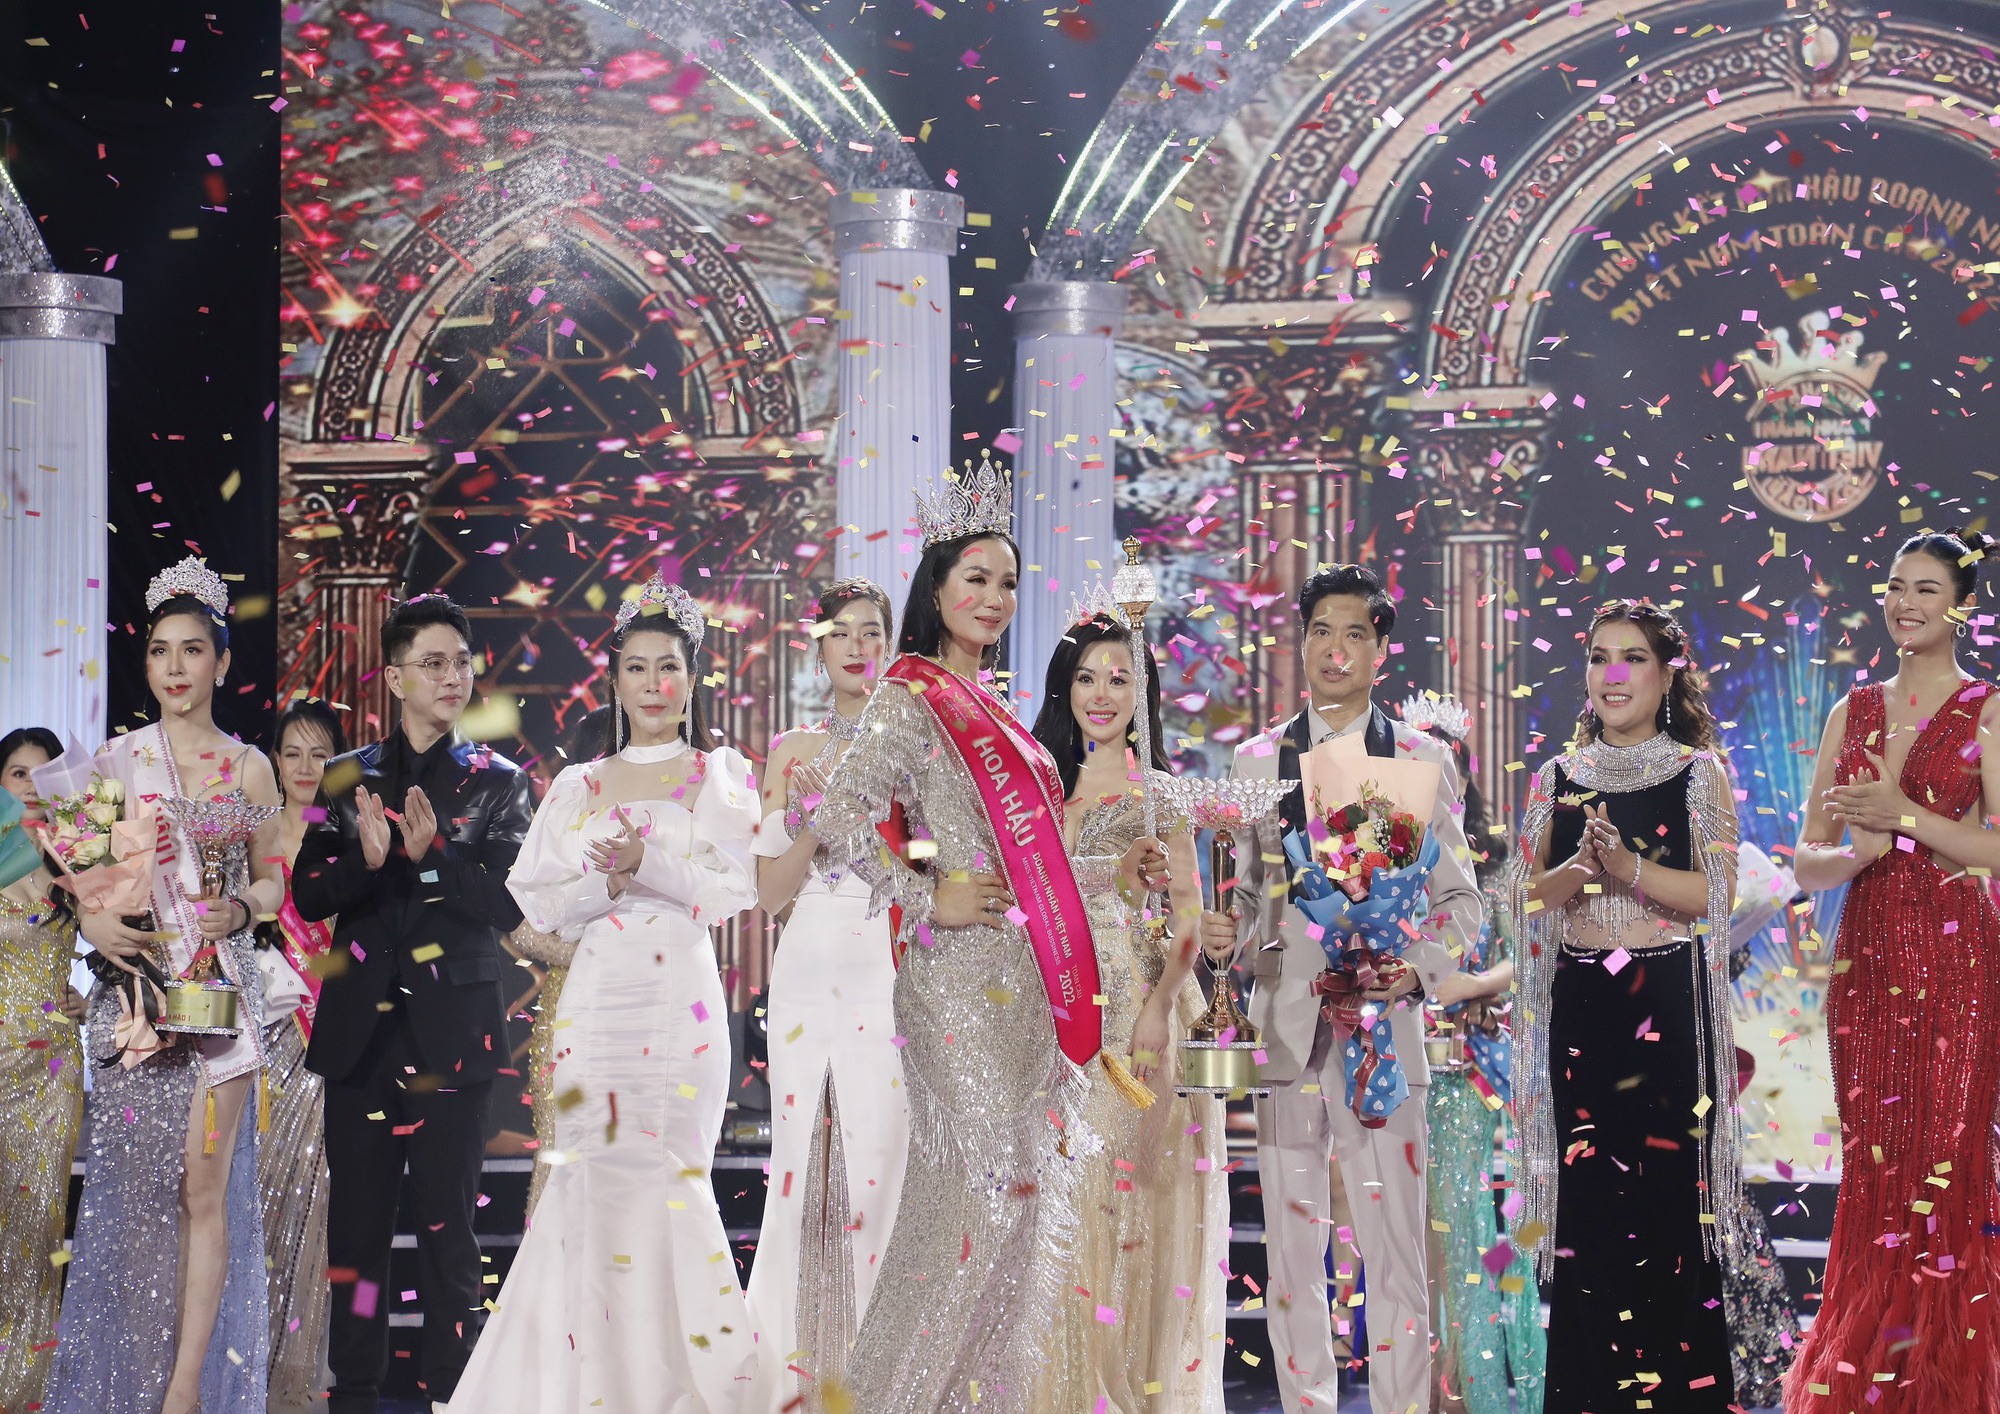 Hình ảnh trong đêm chung kết Hoa hậu Doanh nhân Việt Nam Toàn cầu, tổ chức tại TP Đà Nẵng vào tháng 5 vừa qua